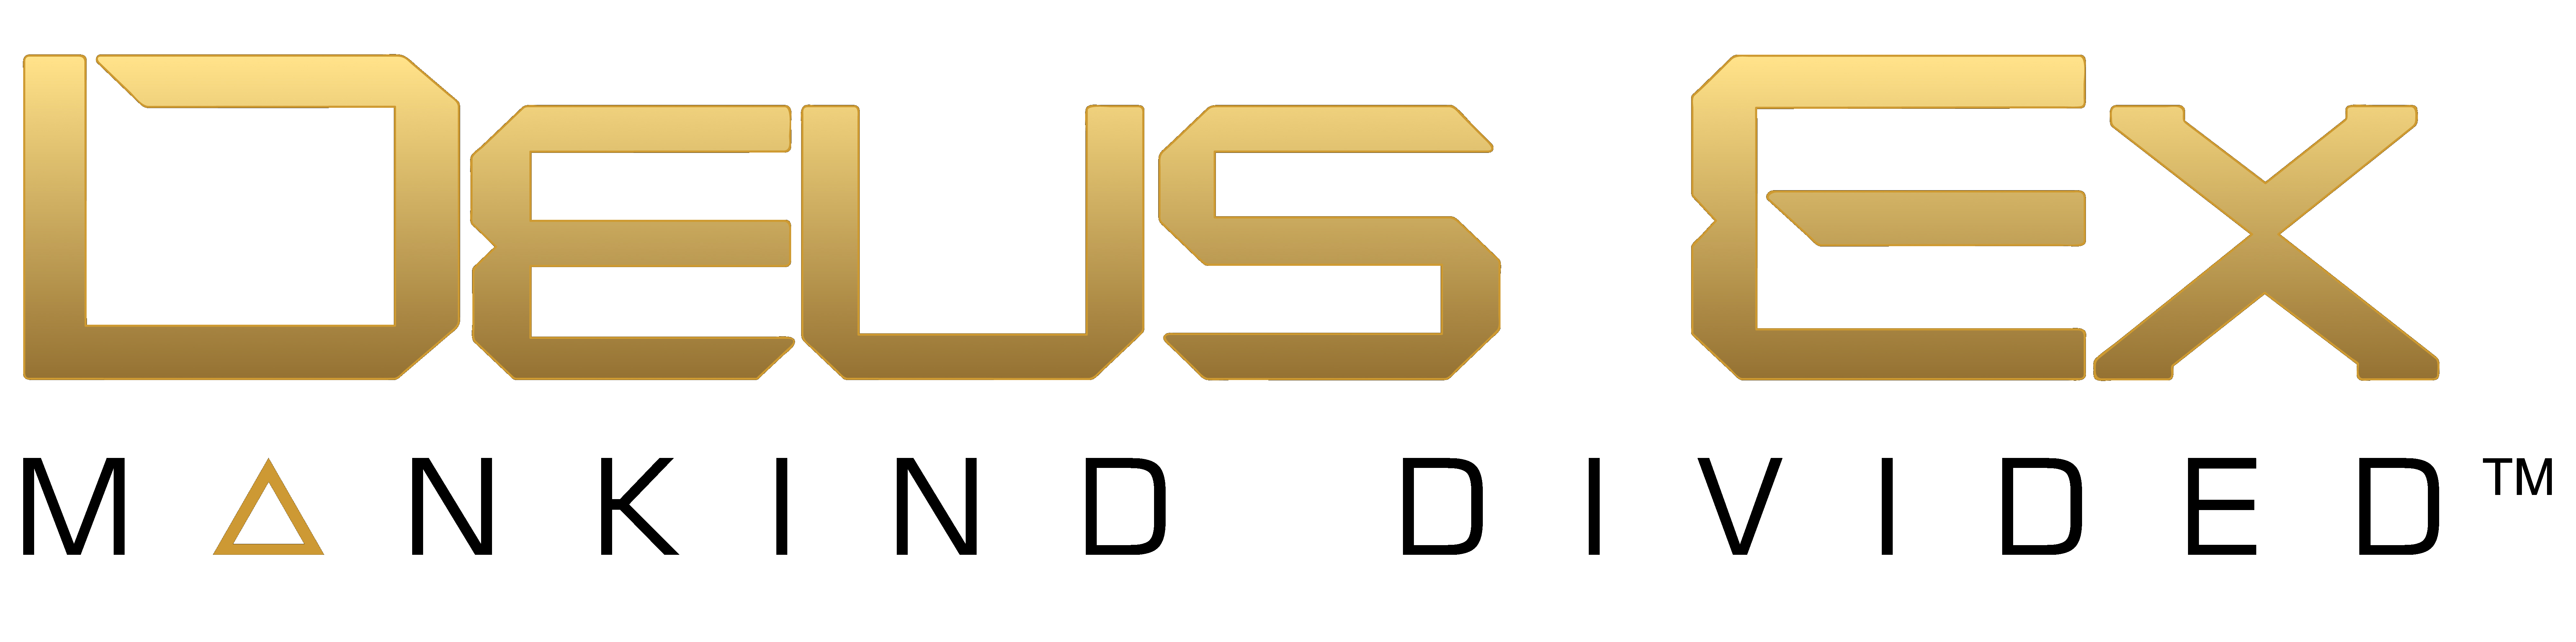 Deus Ex Logo PNG Picture